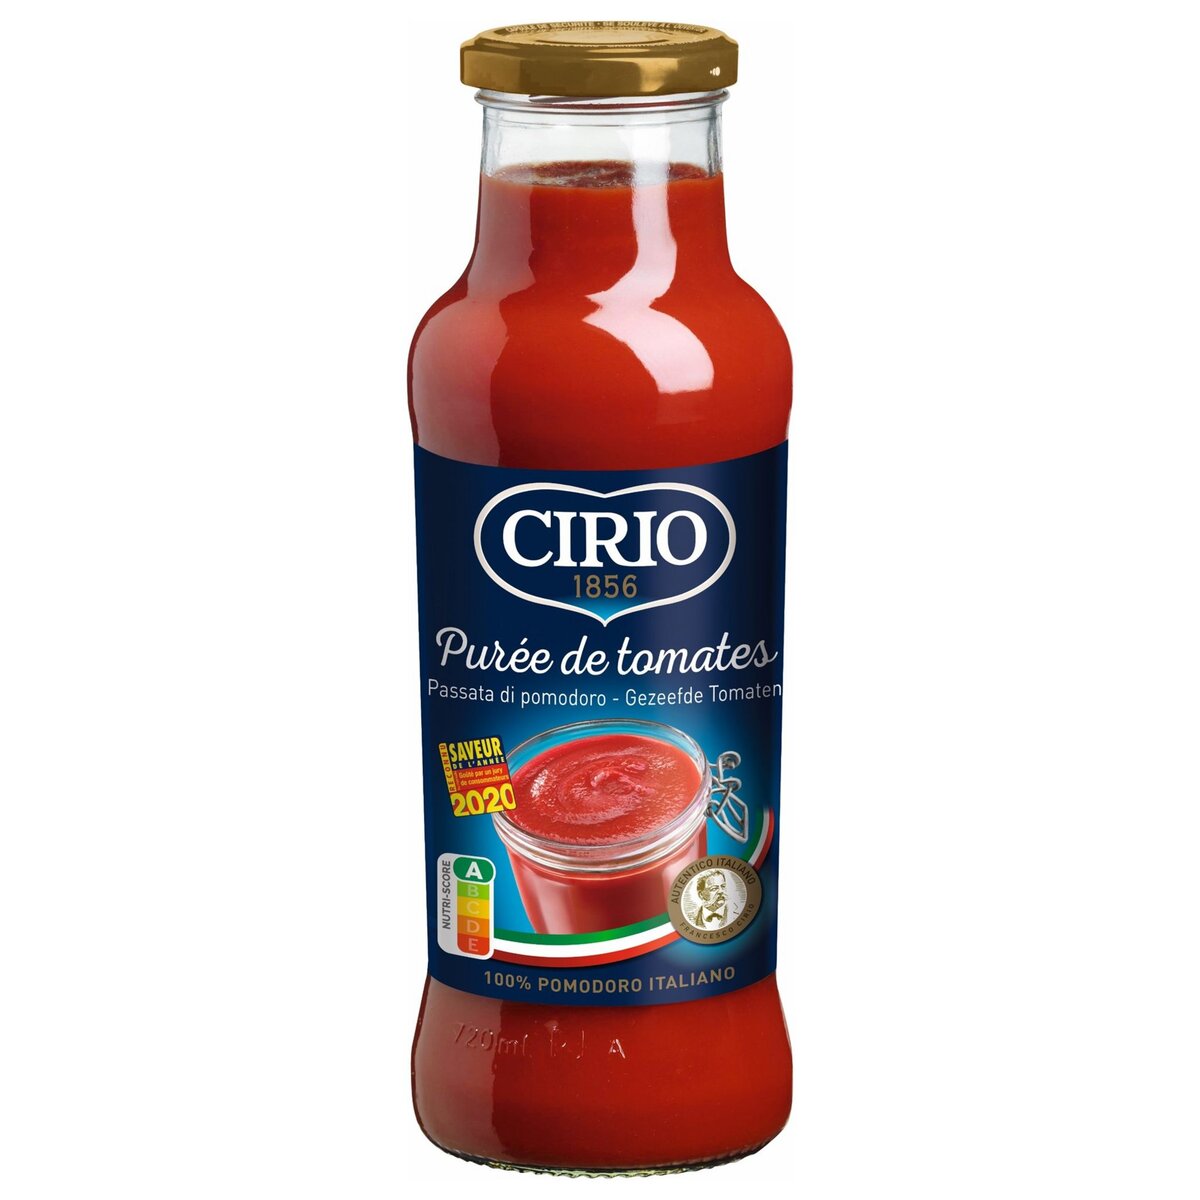 CIRIO Purée de tomates 100% italiennes, en bouteille 700g